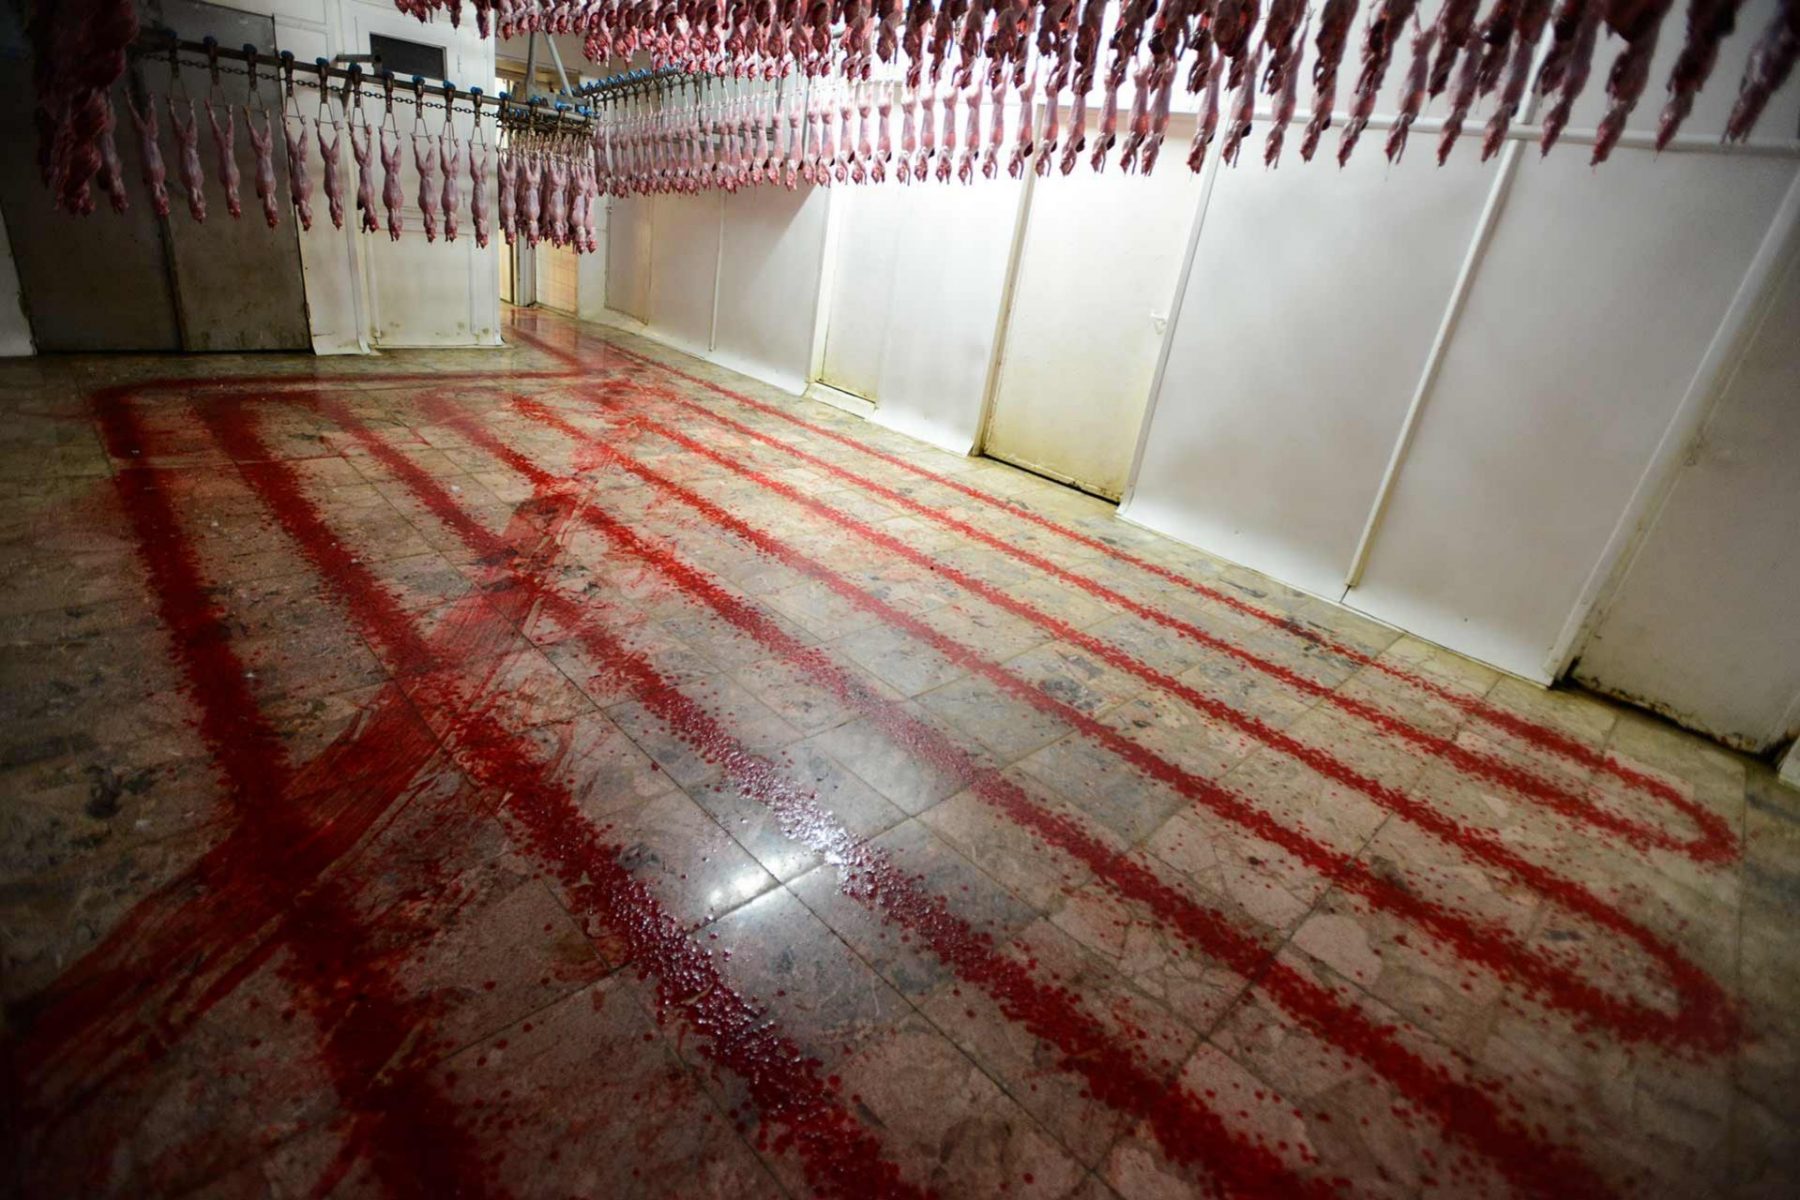 Rabbit slaughterhouse. Spain